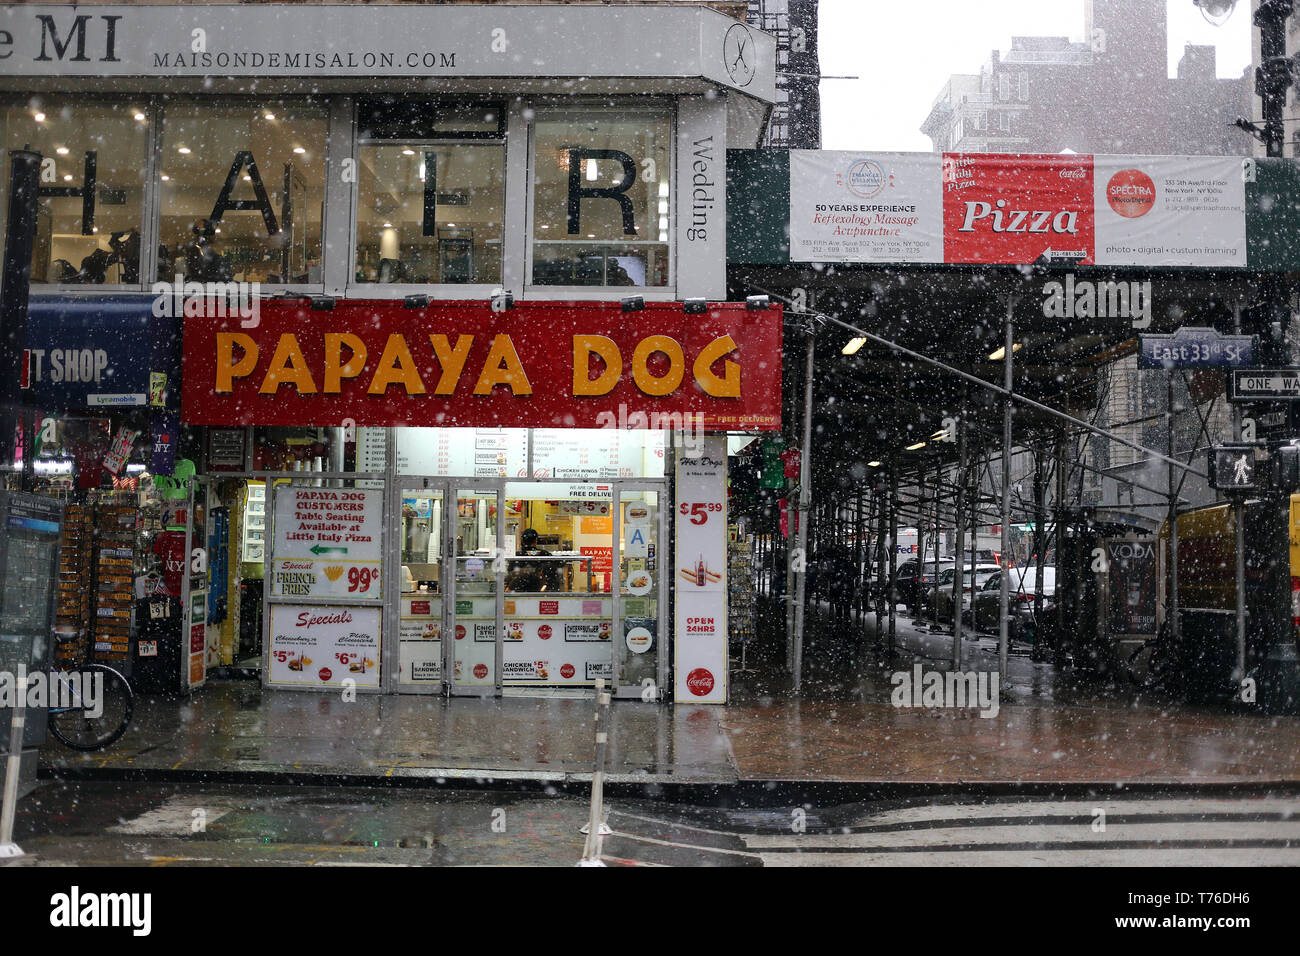 Papayas dog facade in Bradway ave in Manhattan, NY Stock Photo